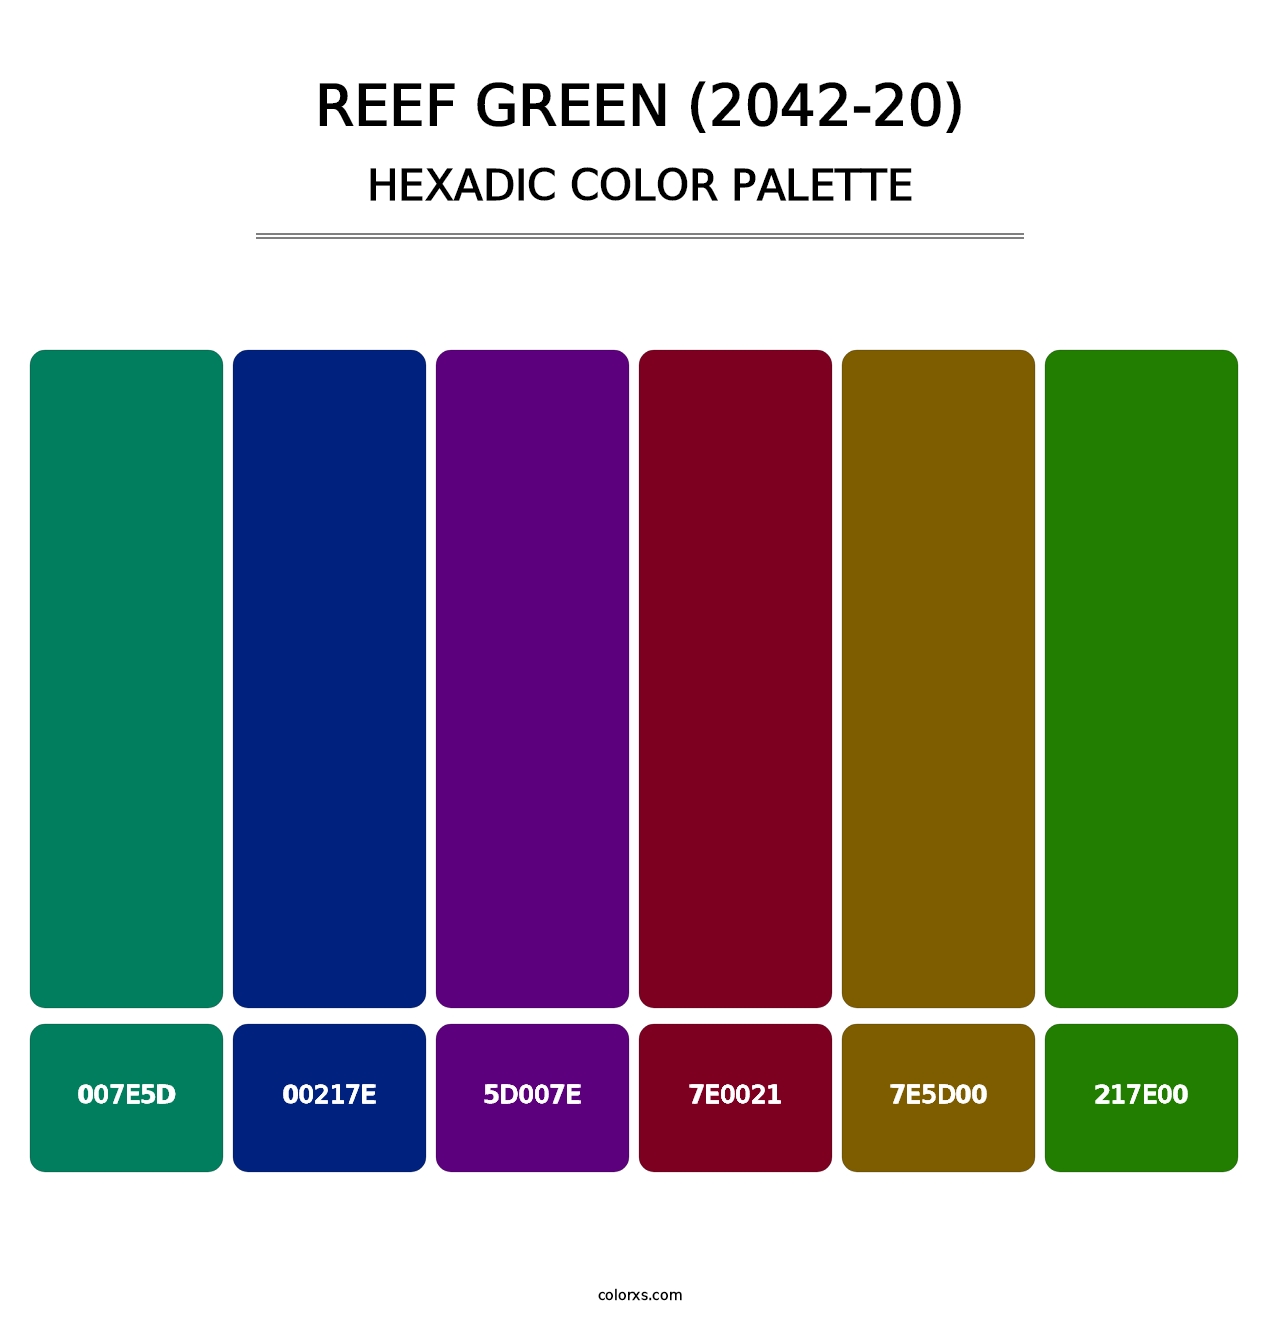 Reef Green (2042-20) - Hexadic Color Palette